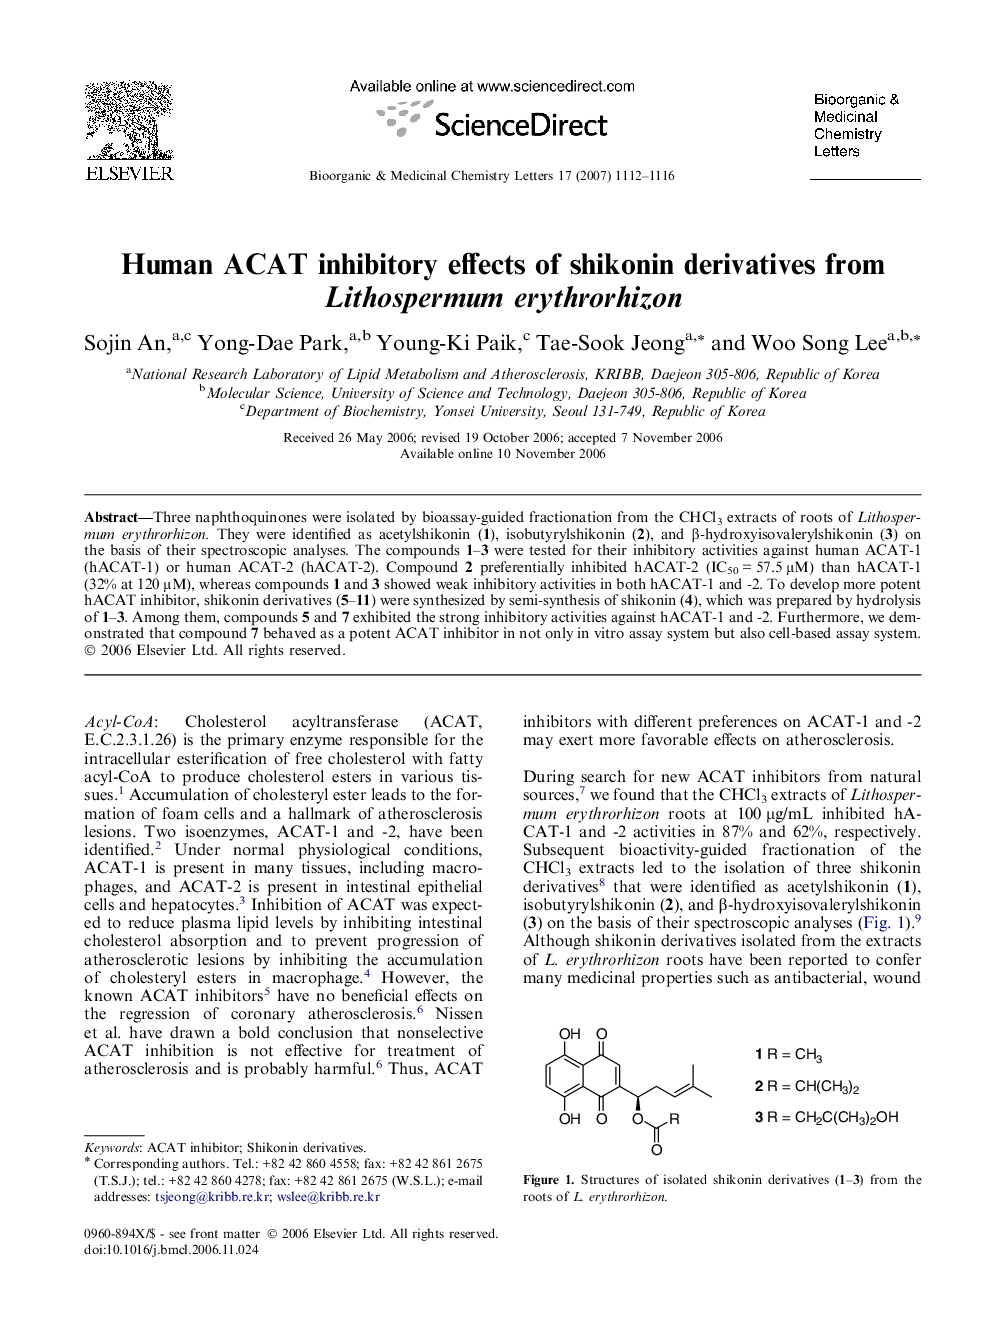 Human ACAT inhibitory effects of shikonin derivatives from Lithospermum erythrorhizon